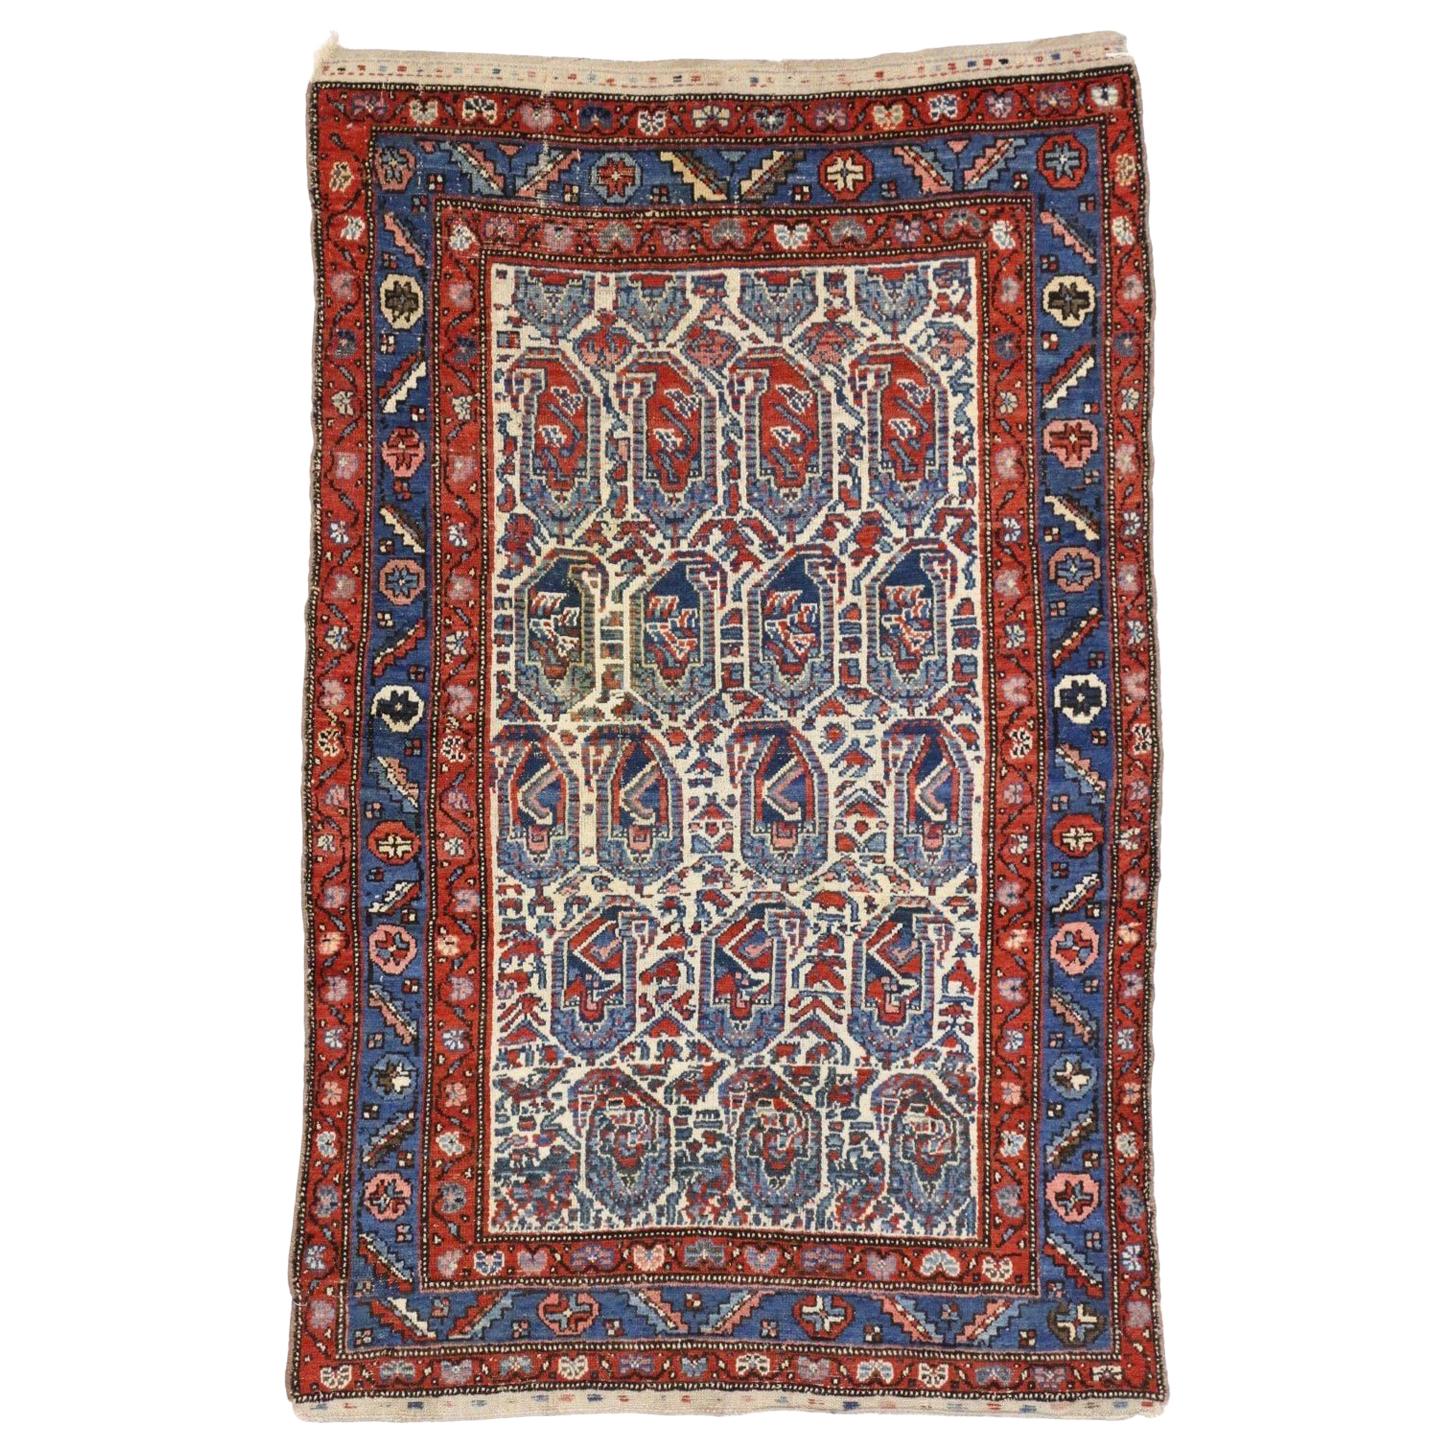 Persischer kurdischer Teppich mit blauem Boteh-Muster aus Persien